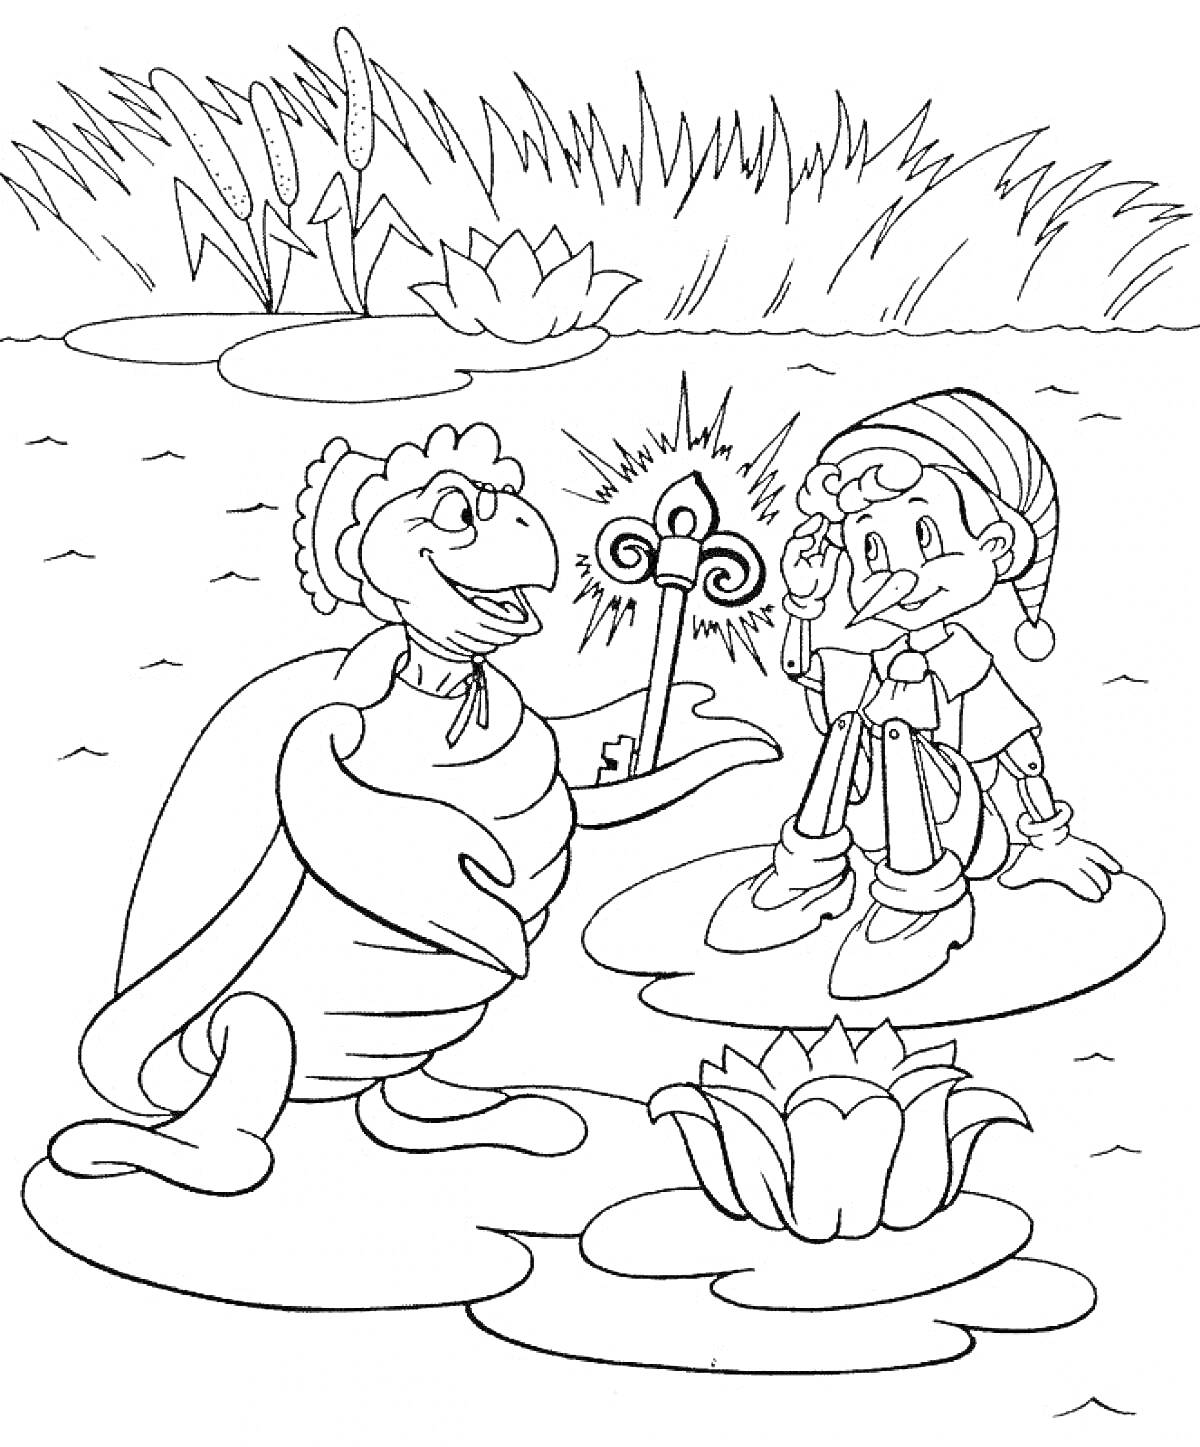 Раскраска Черепаха и мальчик в колпаке держат ключ на лилии вблизи болота с кувшинками и травой